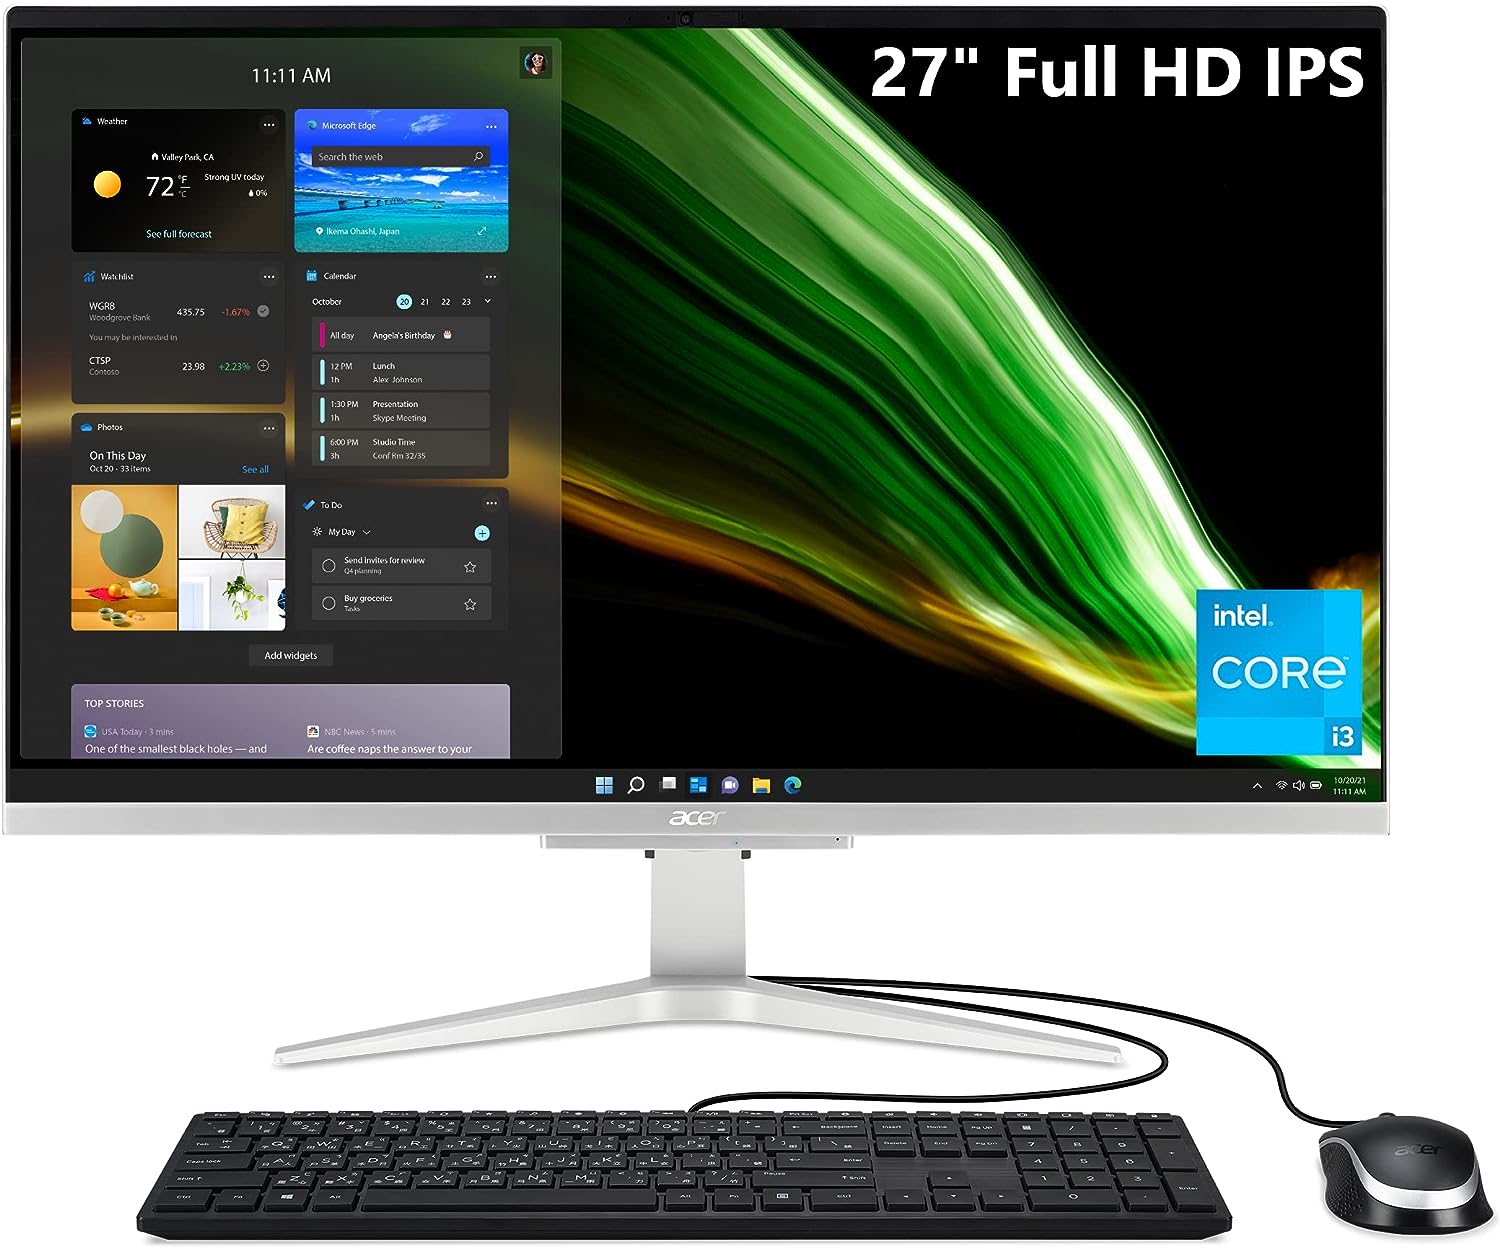 Acer Aspire C27-1655-URi3 AIO Desktop Review